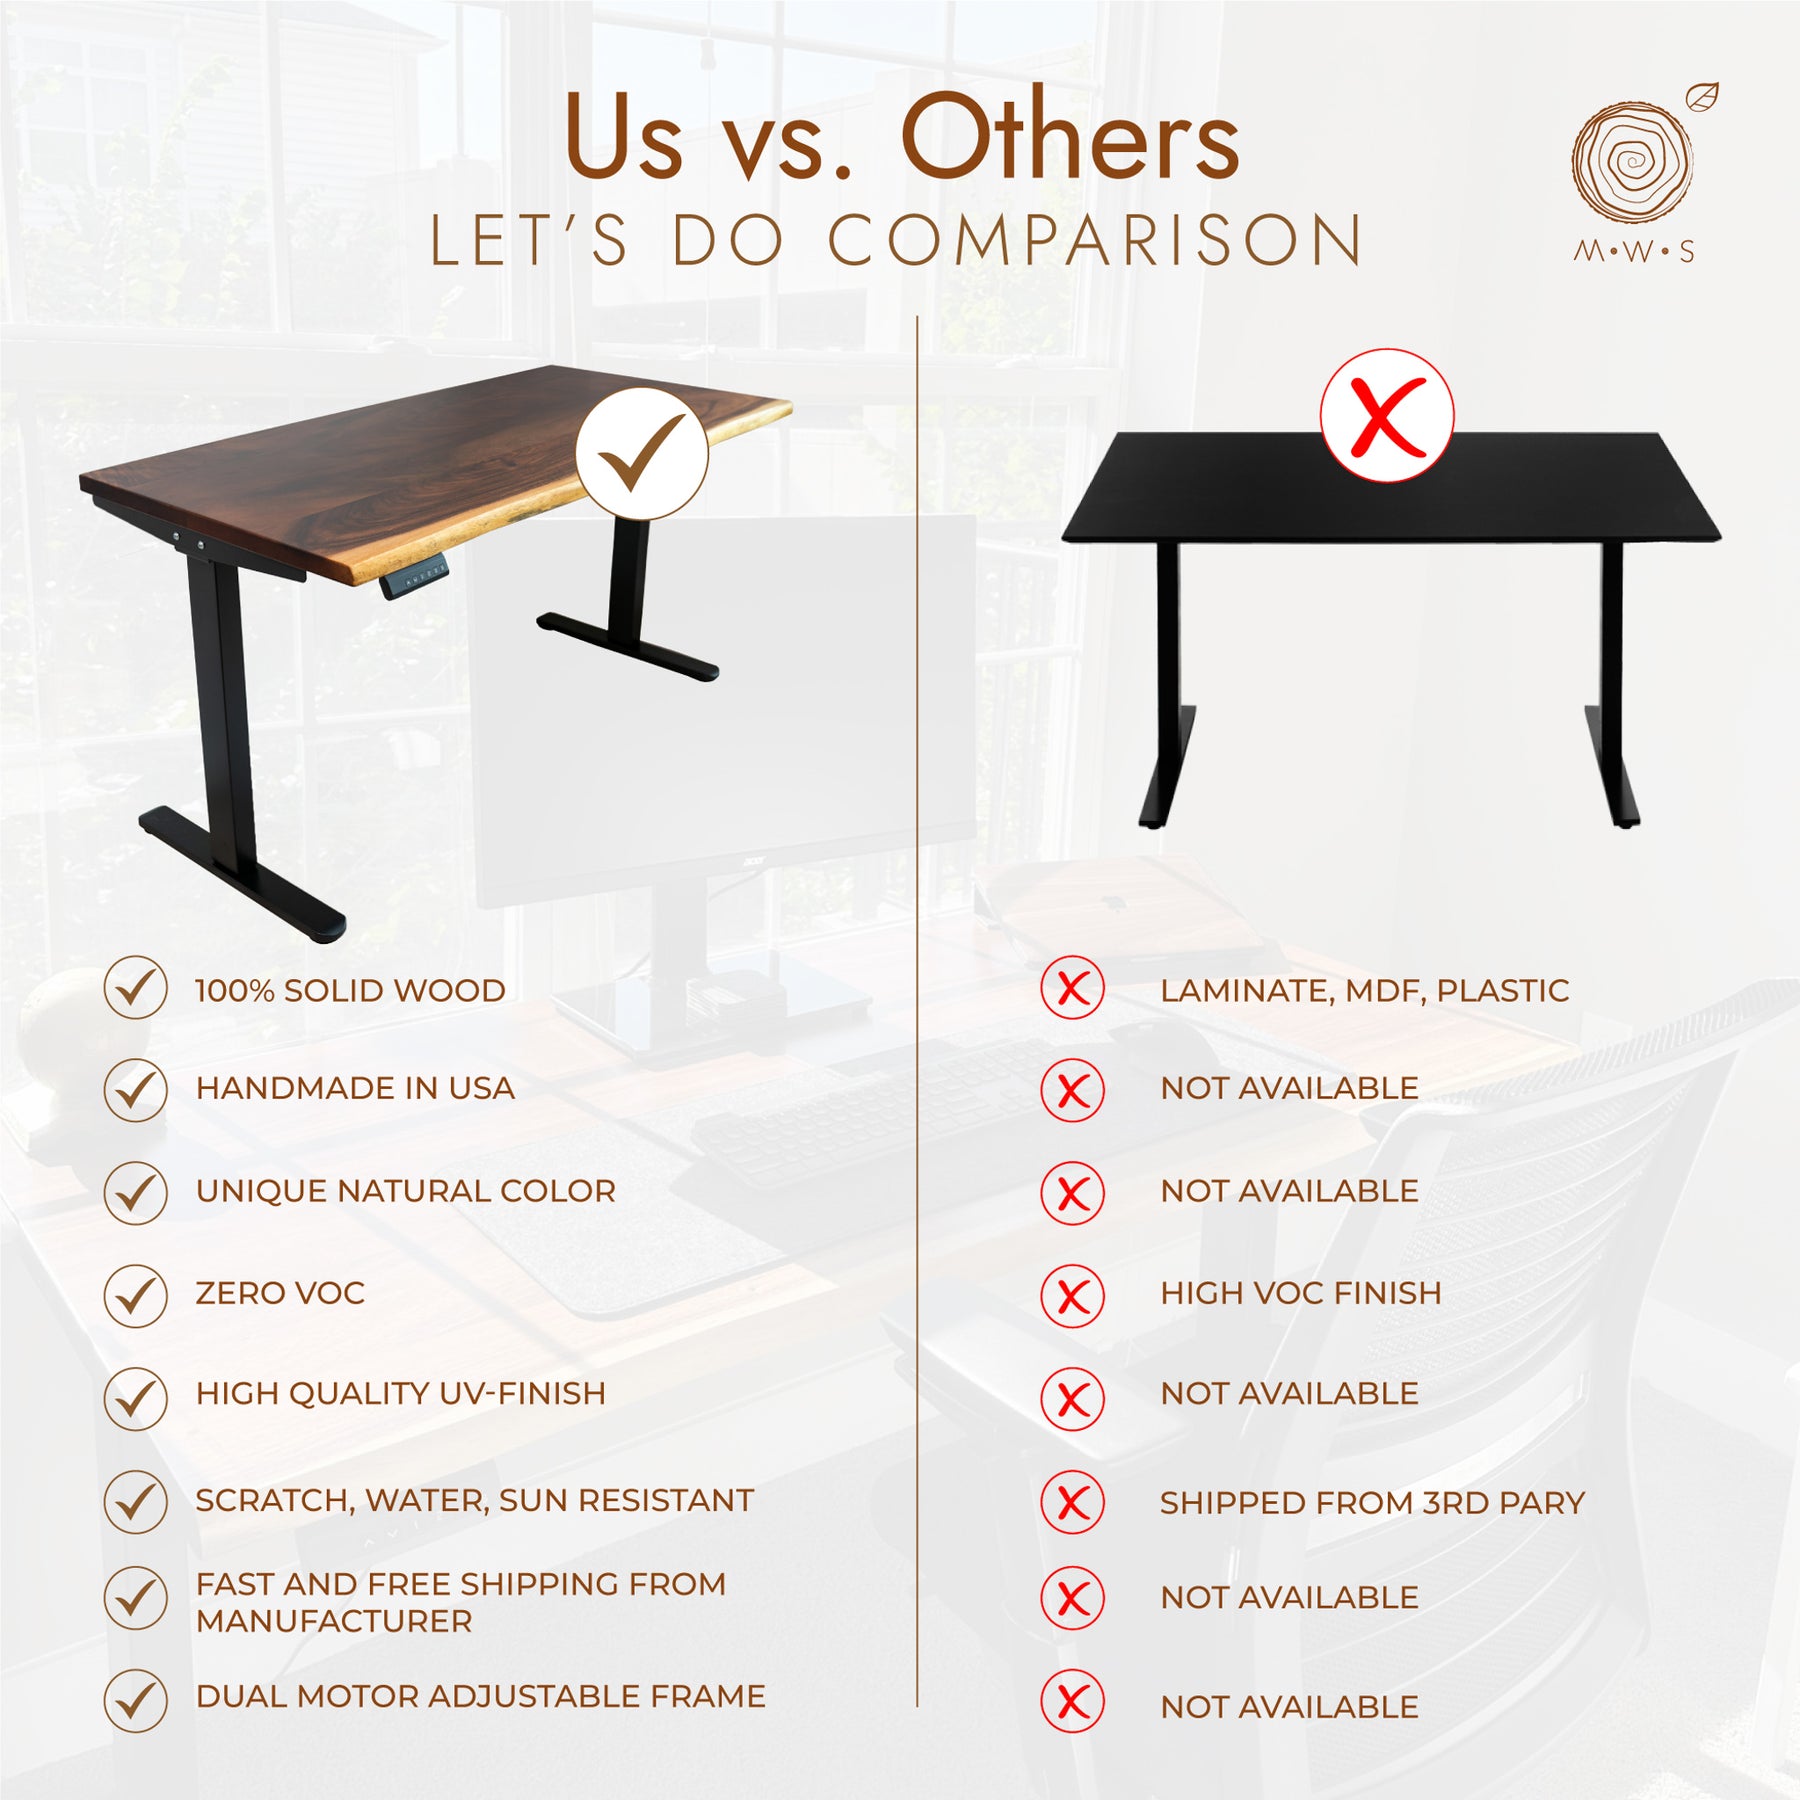 Adjustable Standing Desk - Solid Wood Standing Desk, Live Edge Desk